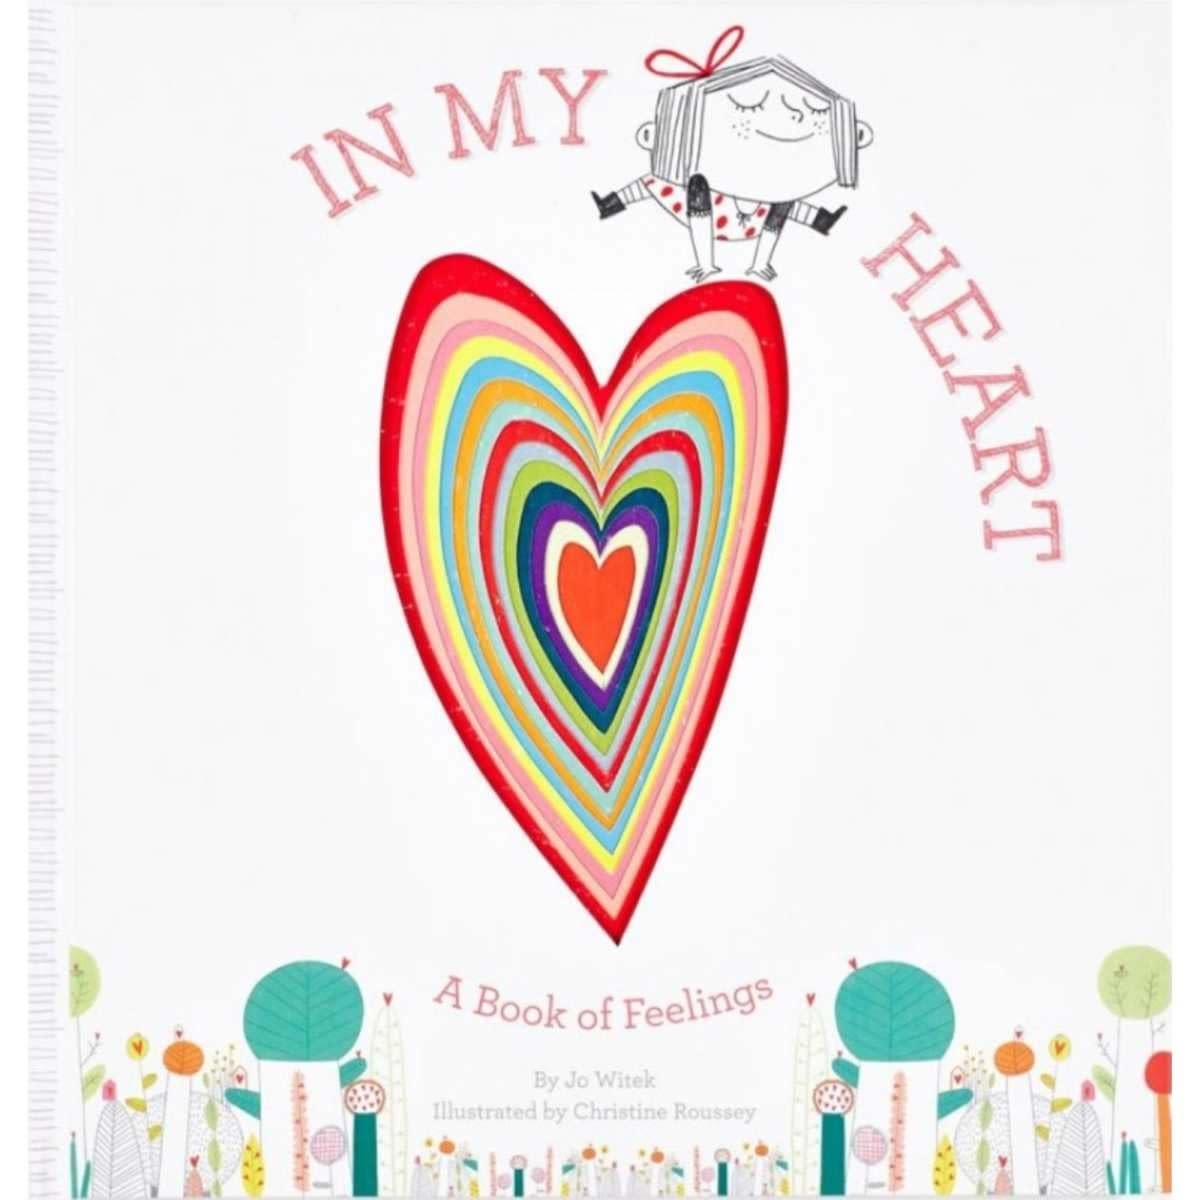 In My Heart: A Book of Feelings